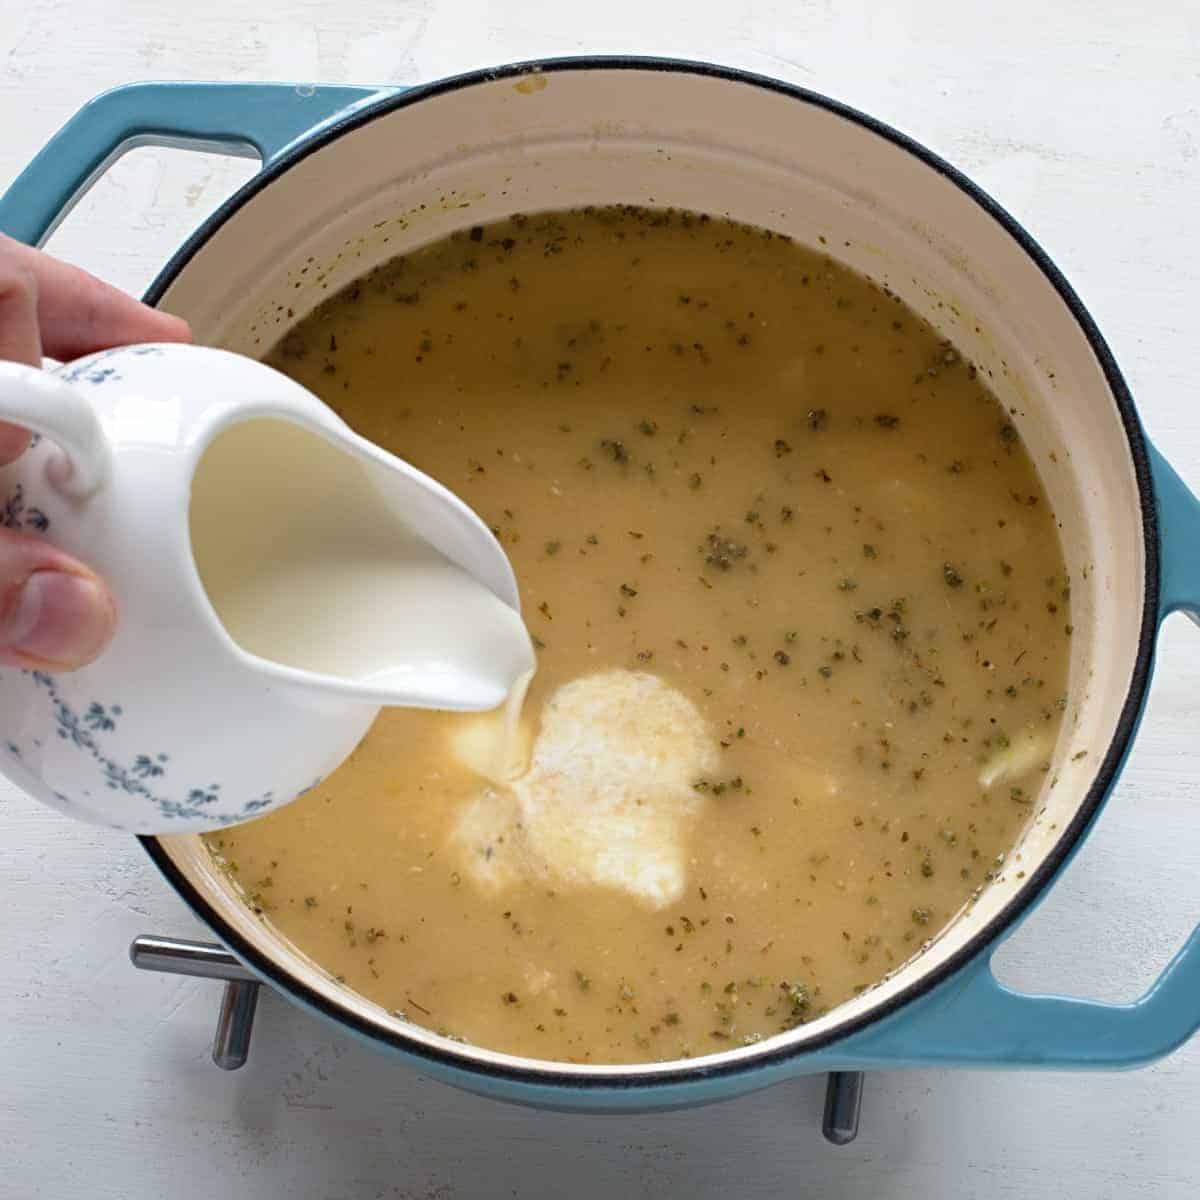 Pouring heavy cream in split pea soup.